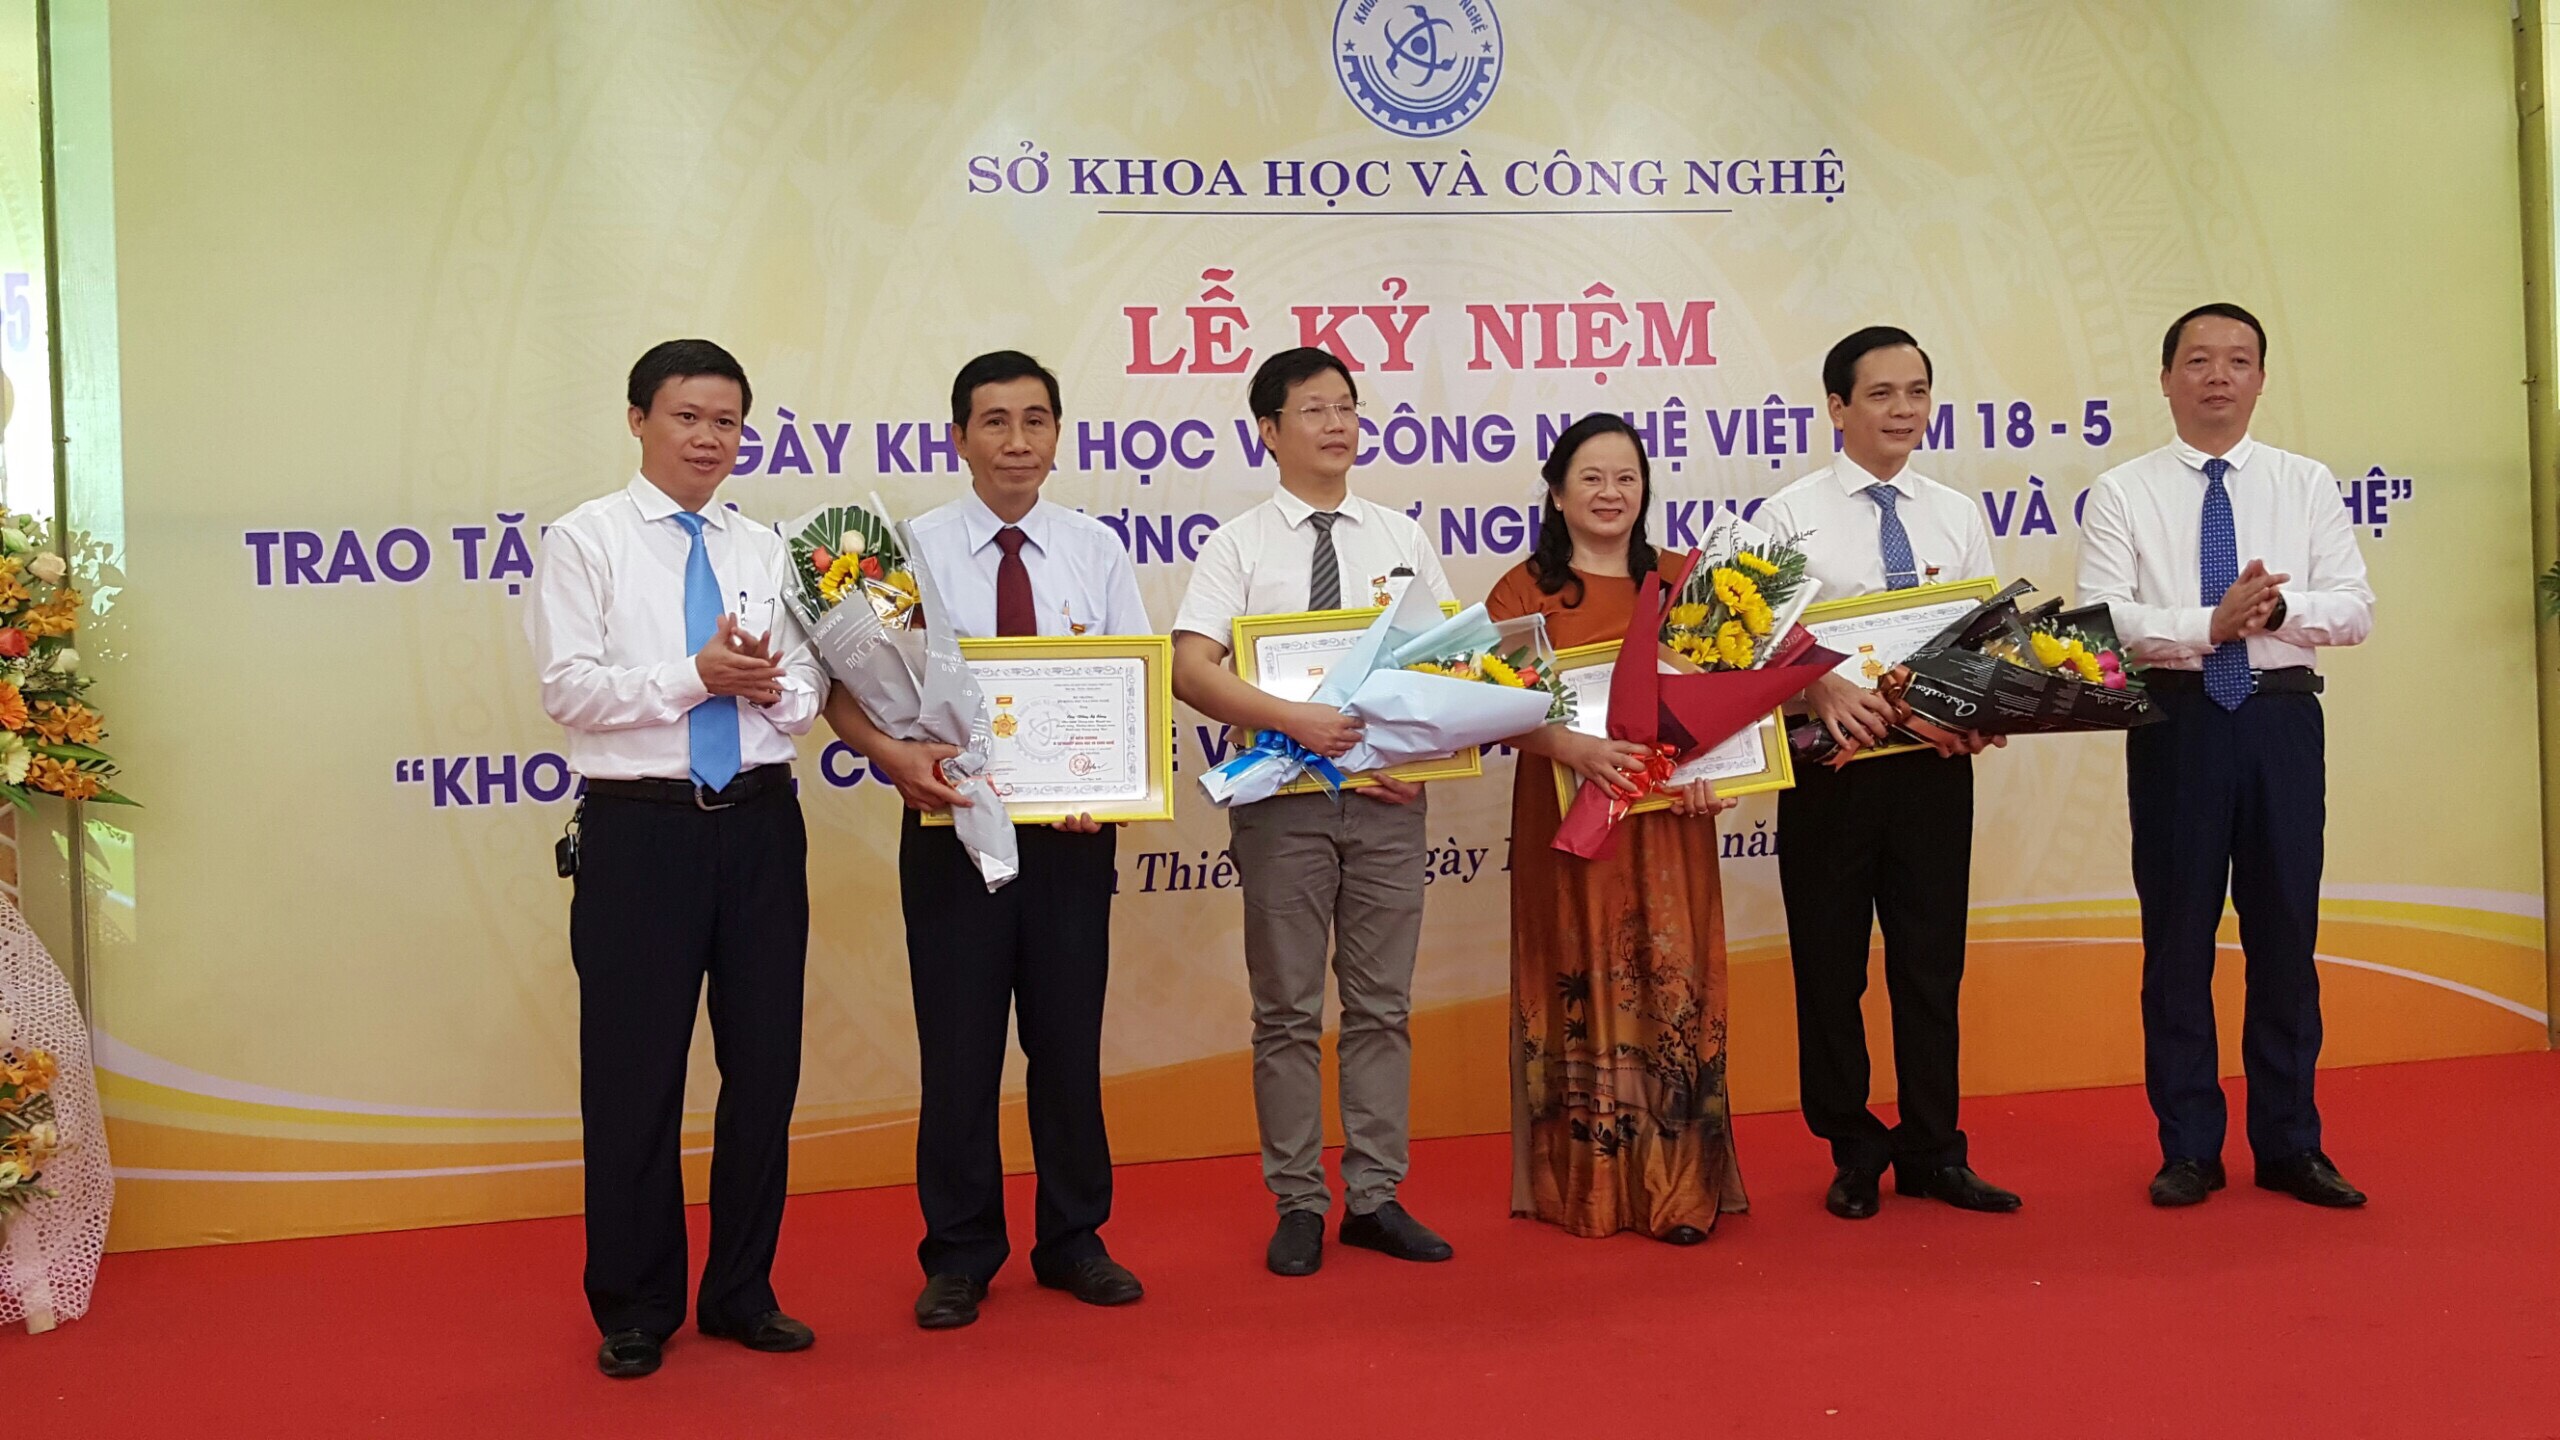 Trao tặng kỷ niệm chương vì sự nghiệp khoa học công nghệ nhân Ngày Khoa học Công nghệ Việt Nam 18/5